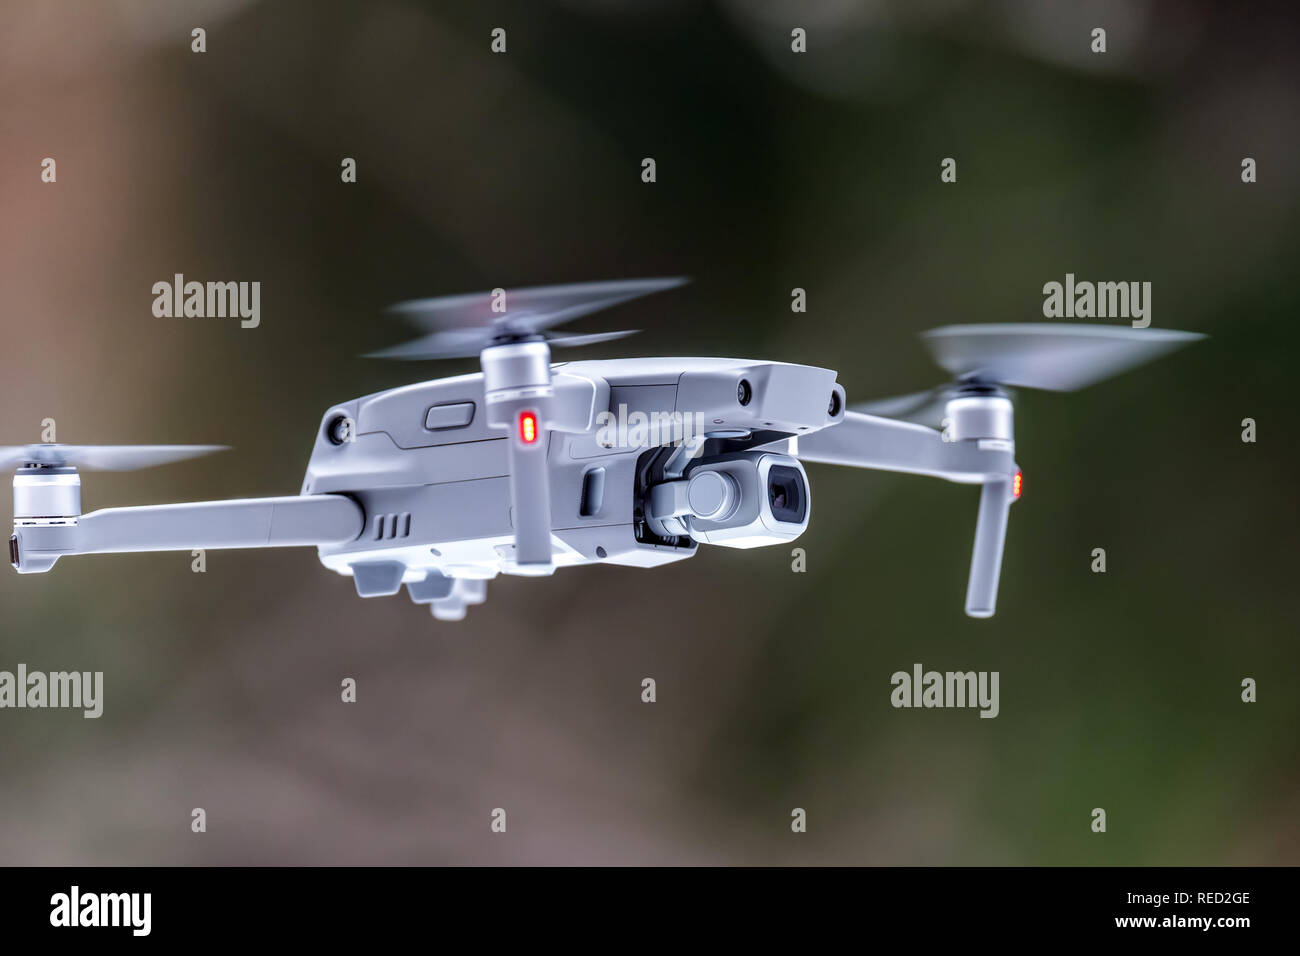 Close drone quadcopter with digital camera Stock Photo